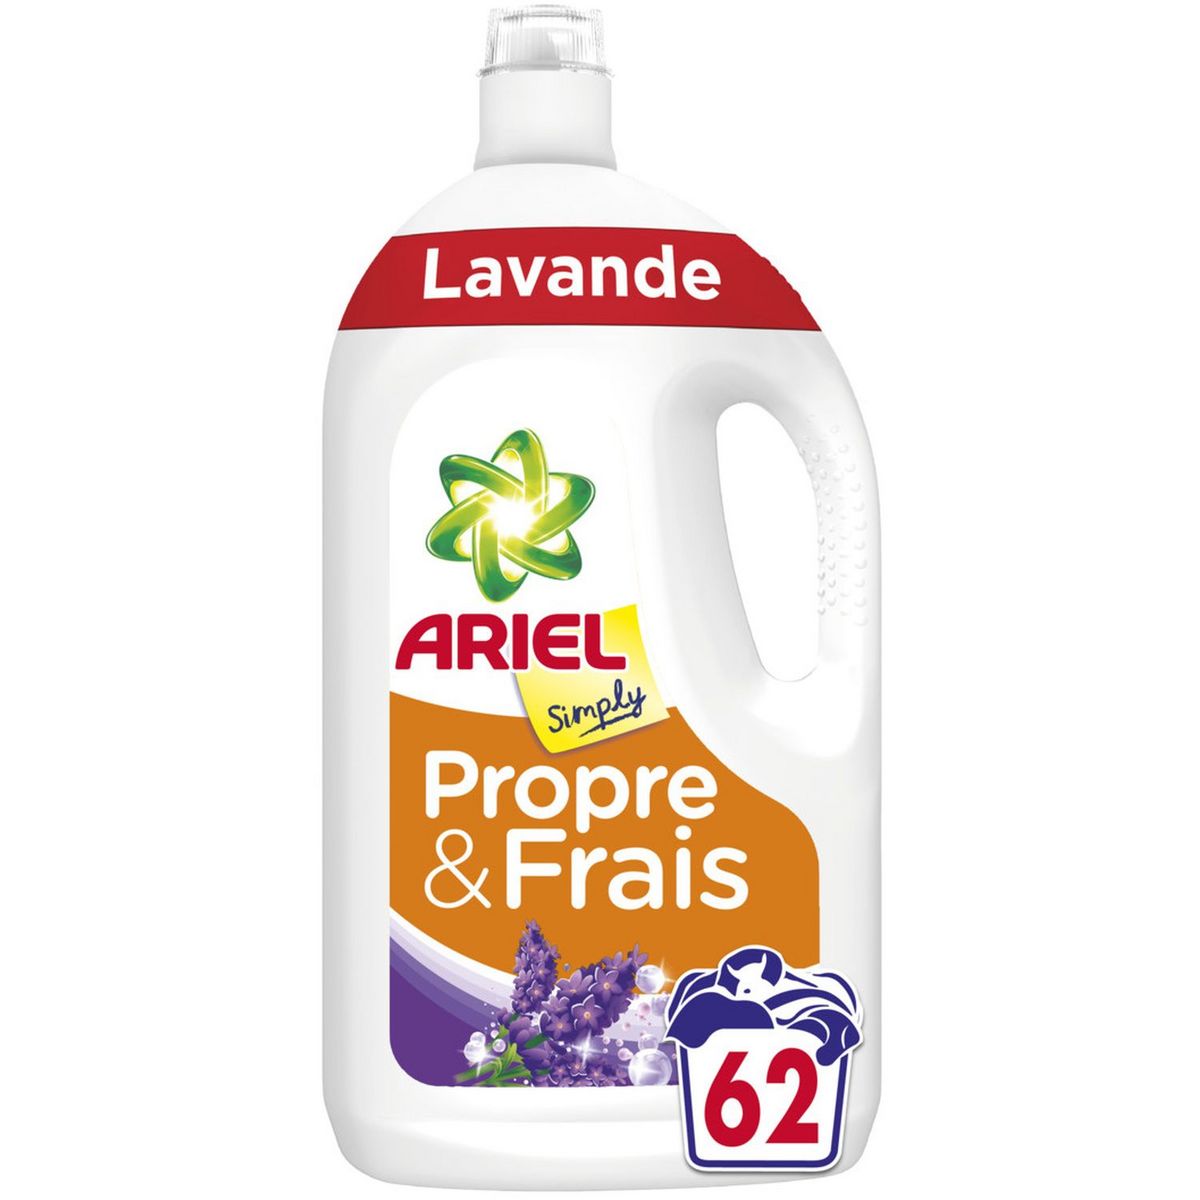 ARIEL Lessive liquide lavande 62 lavages 3,41l